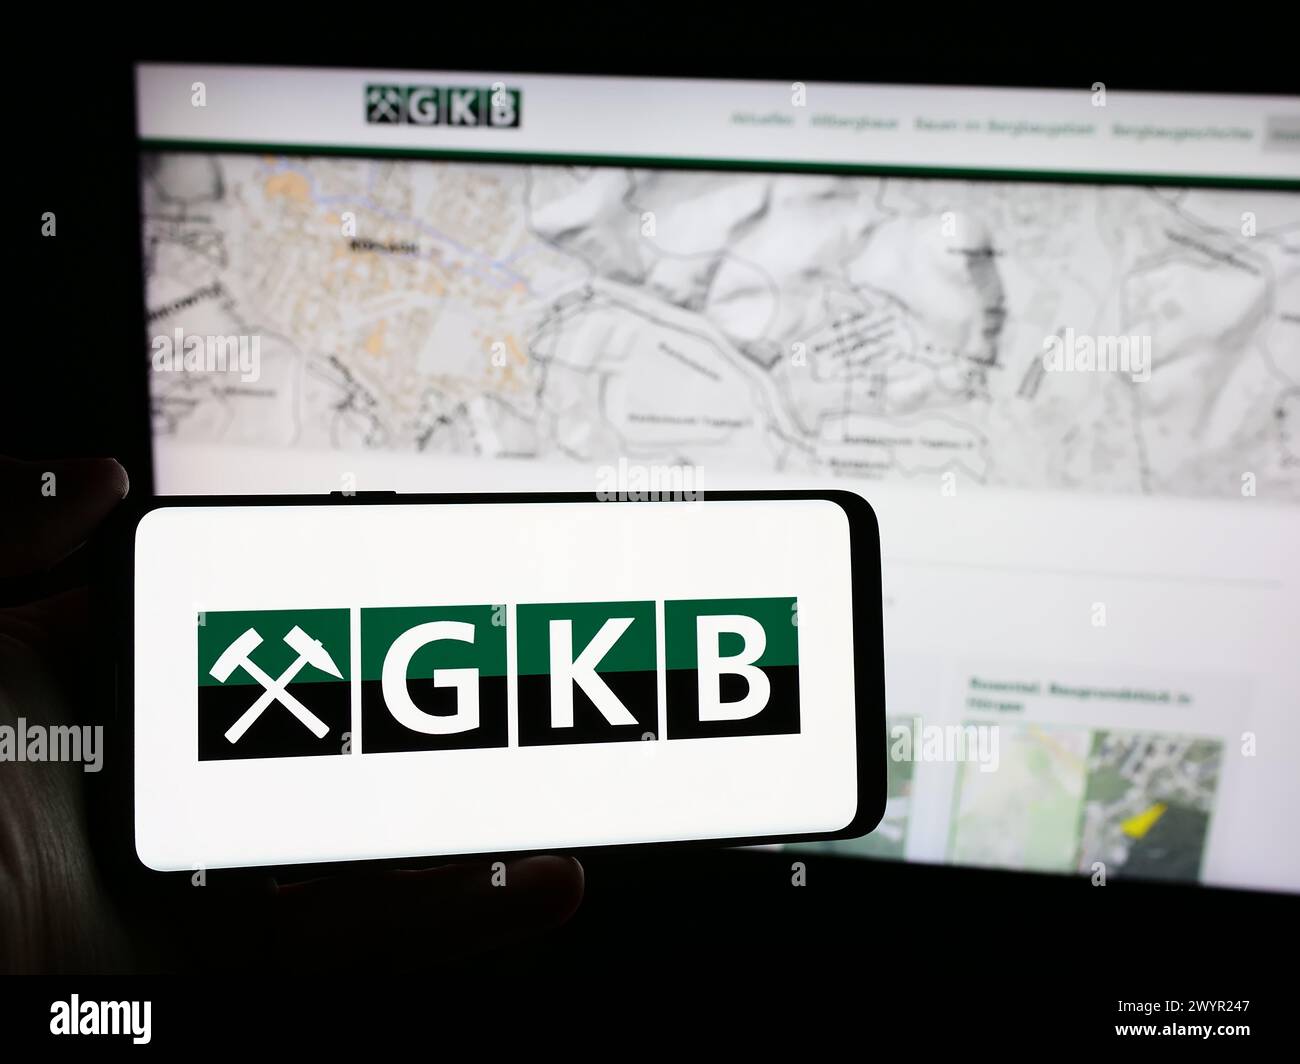 Persona che detiene un cellulare con il logo della società austriaca GKB Bergbau GmbH davanti alla pagina web. Mettere a fuoco il display del telefono. Foto Stock